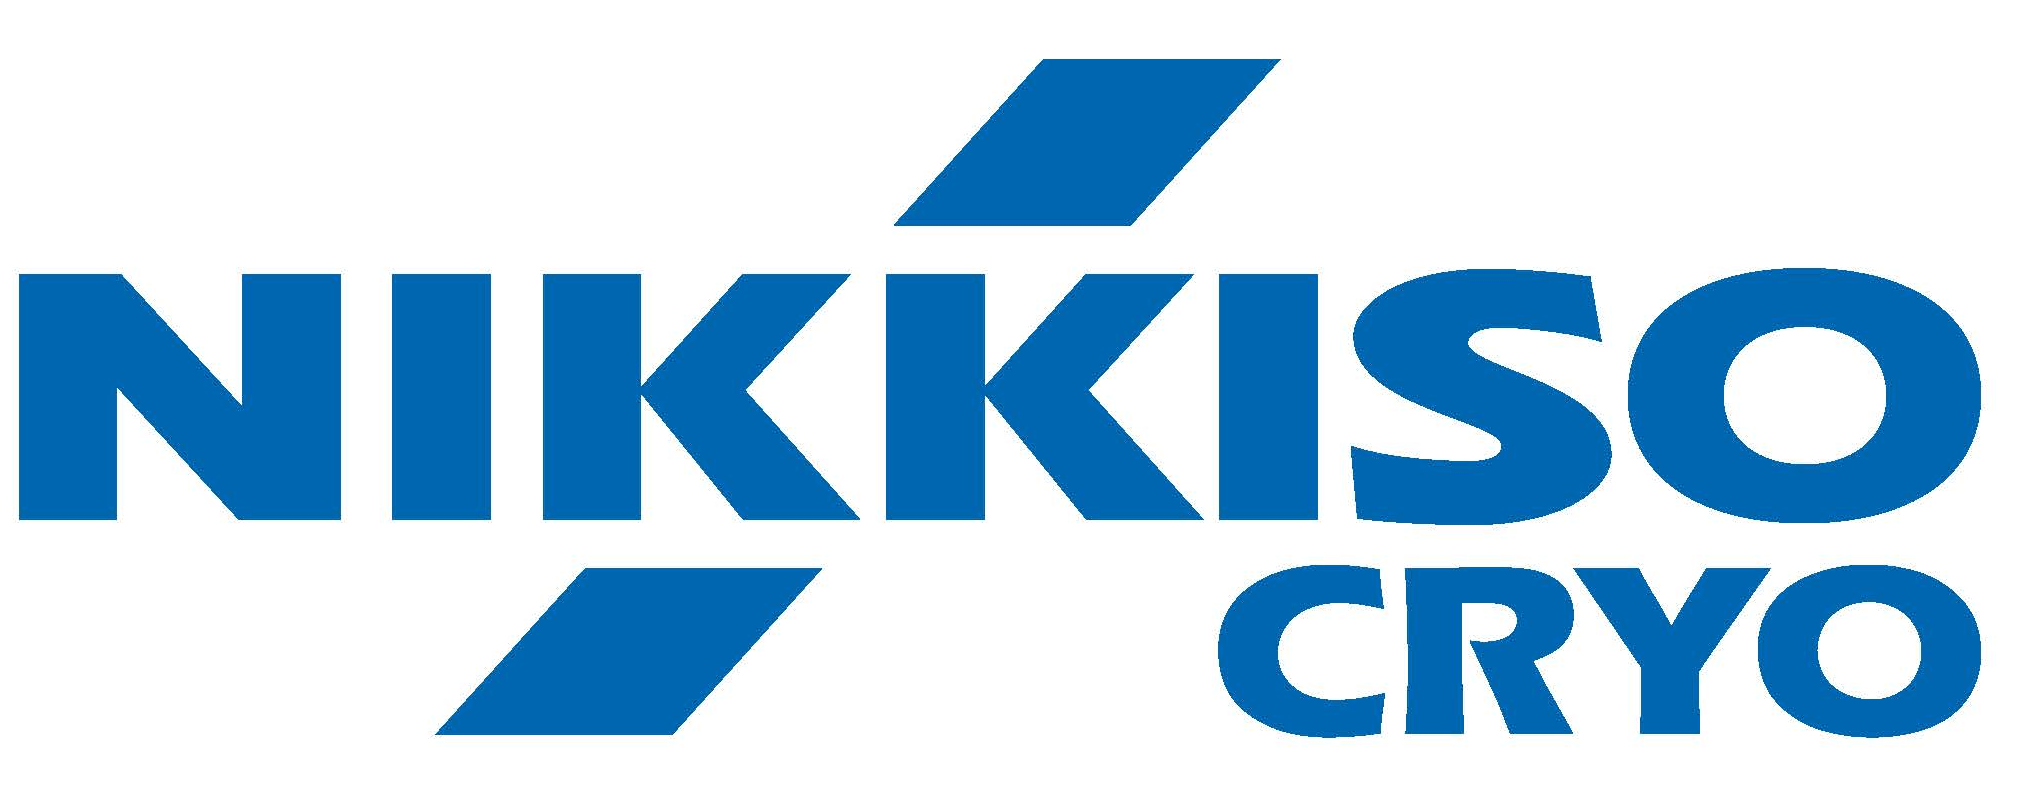 Cryogenic Logo - Nikkiso Careers